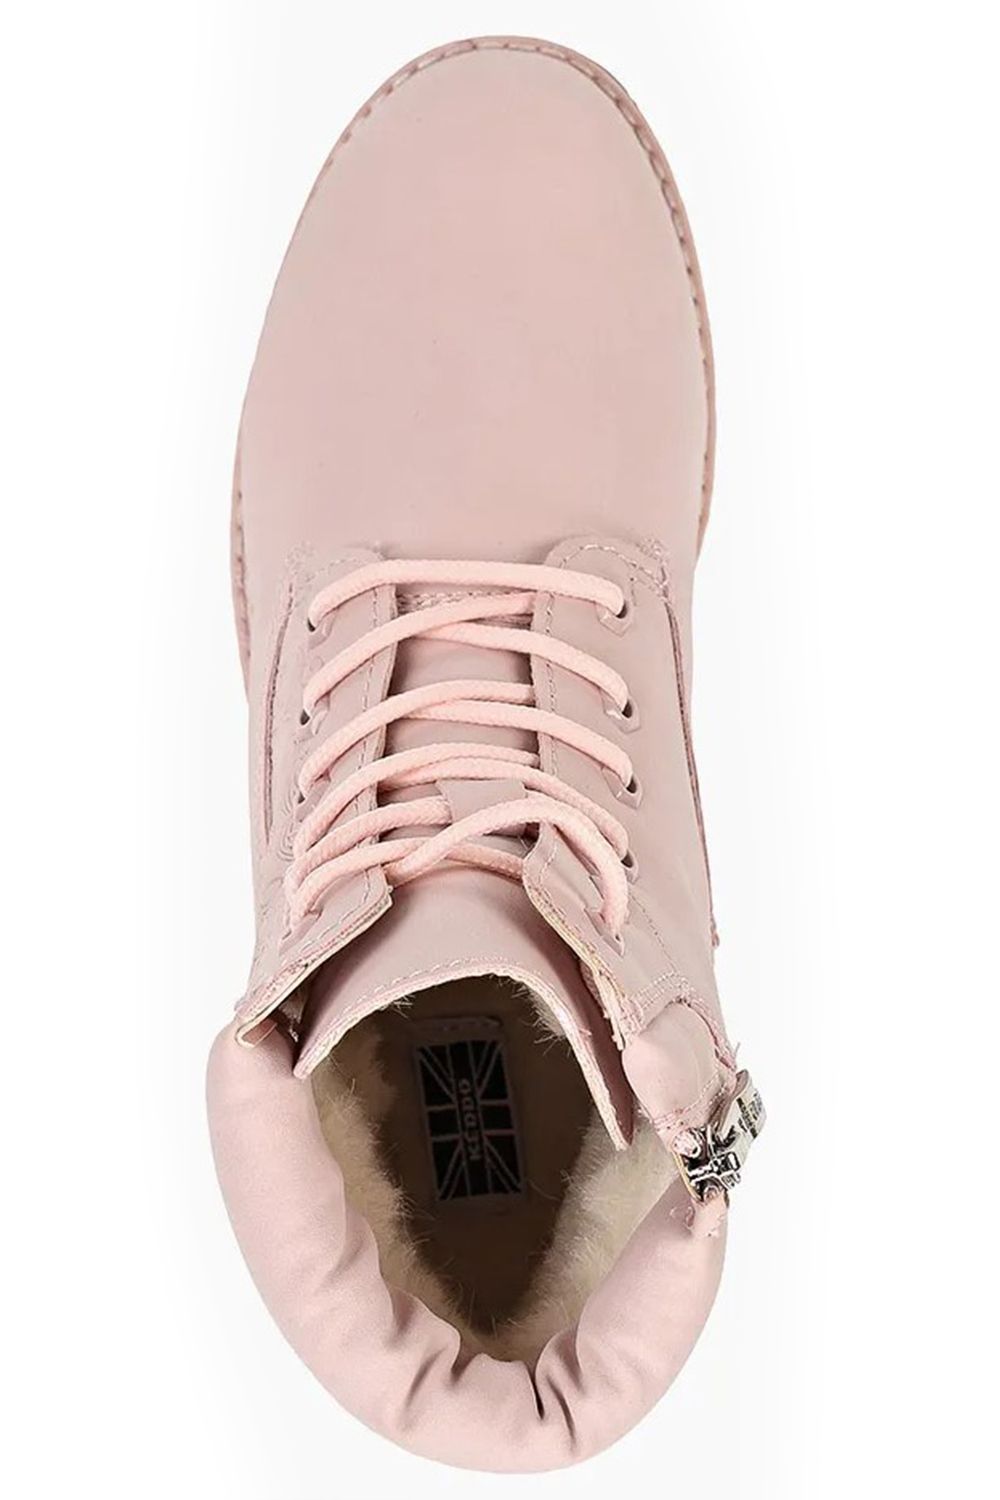 Ботинки Keddo, размер 33, цвет розовый 598127/05-01 - фото 5